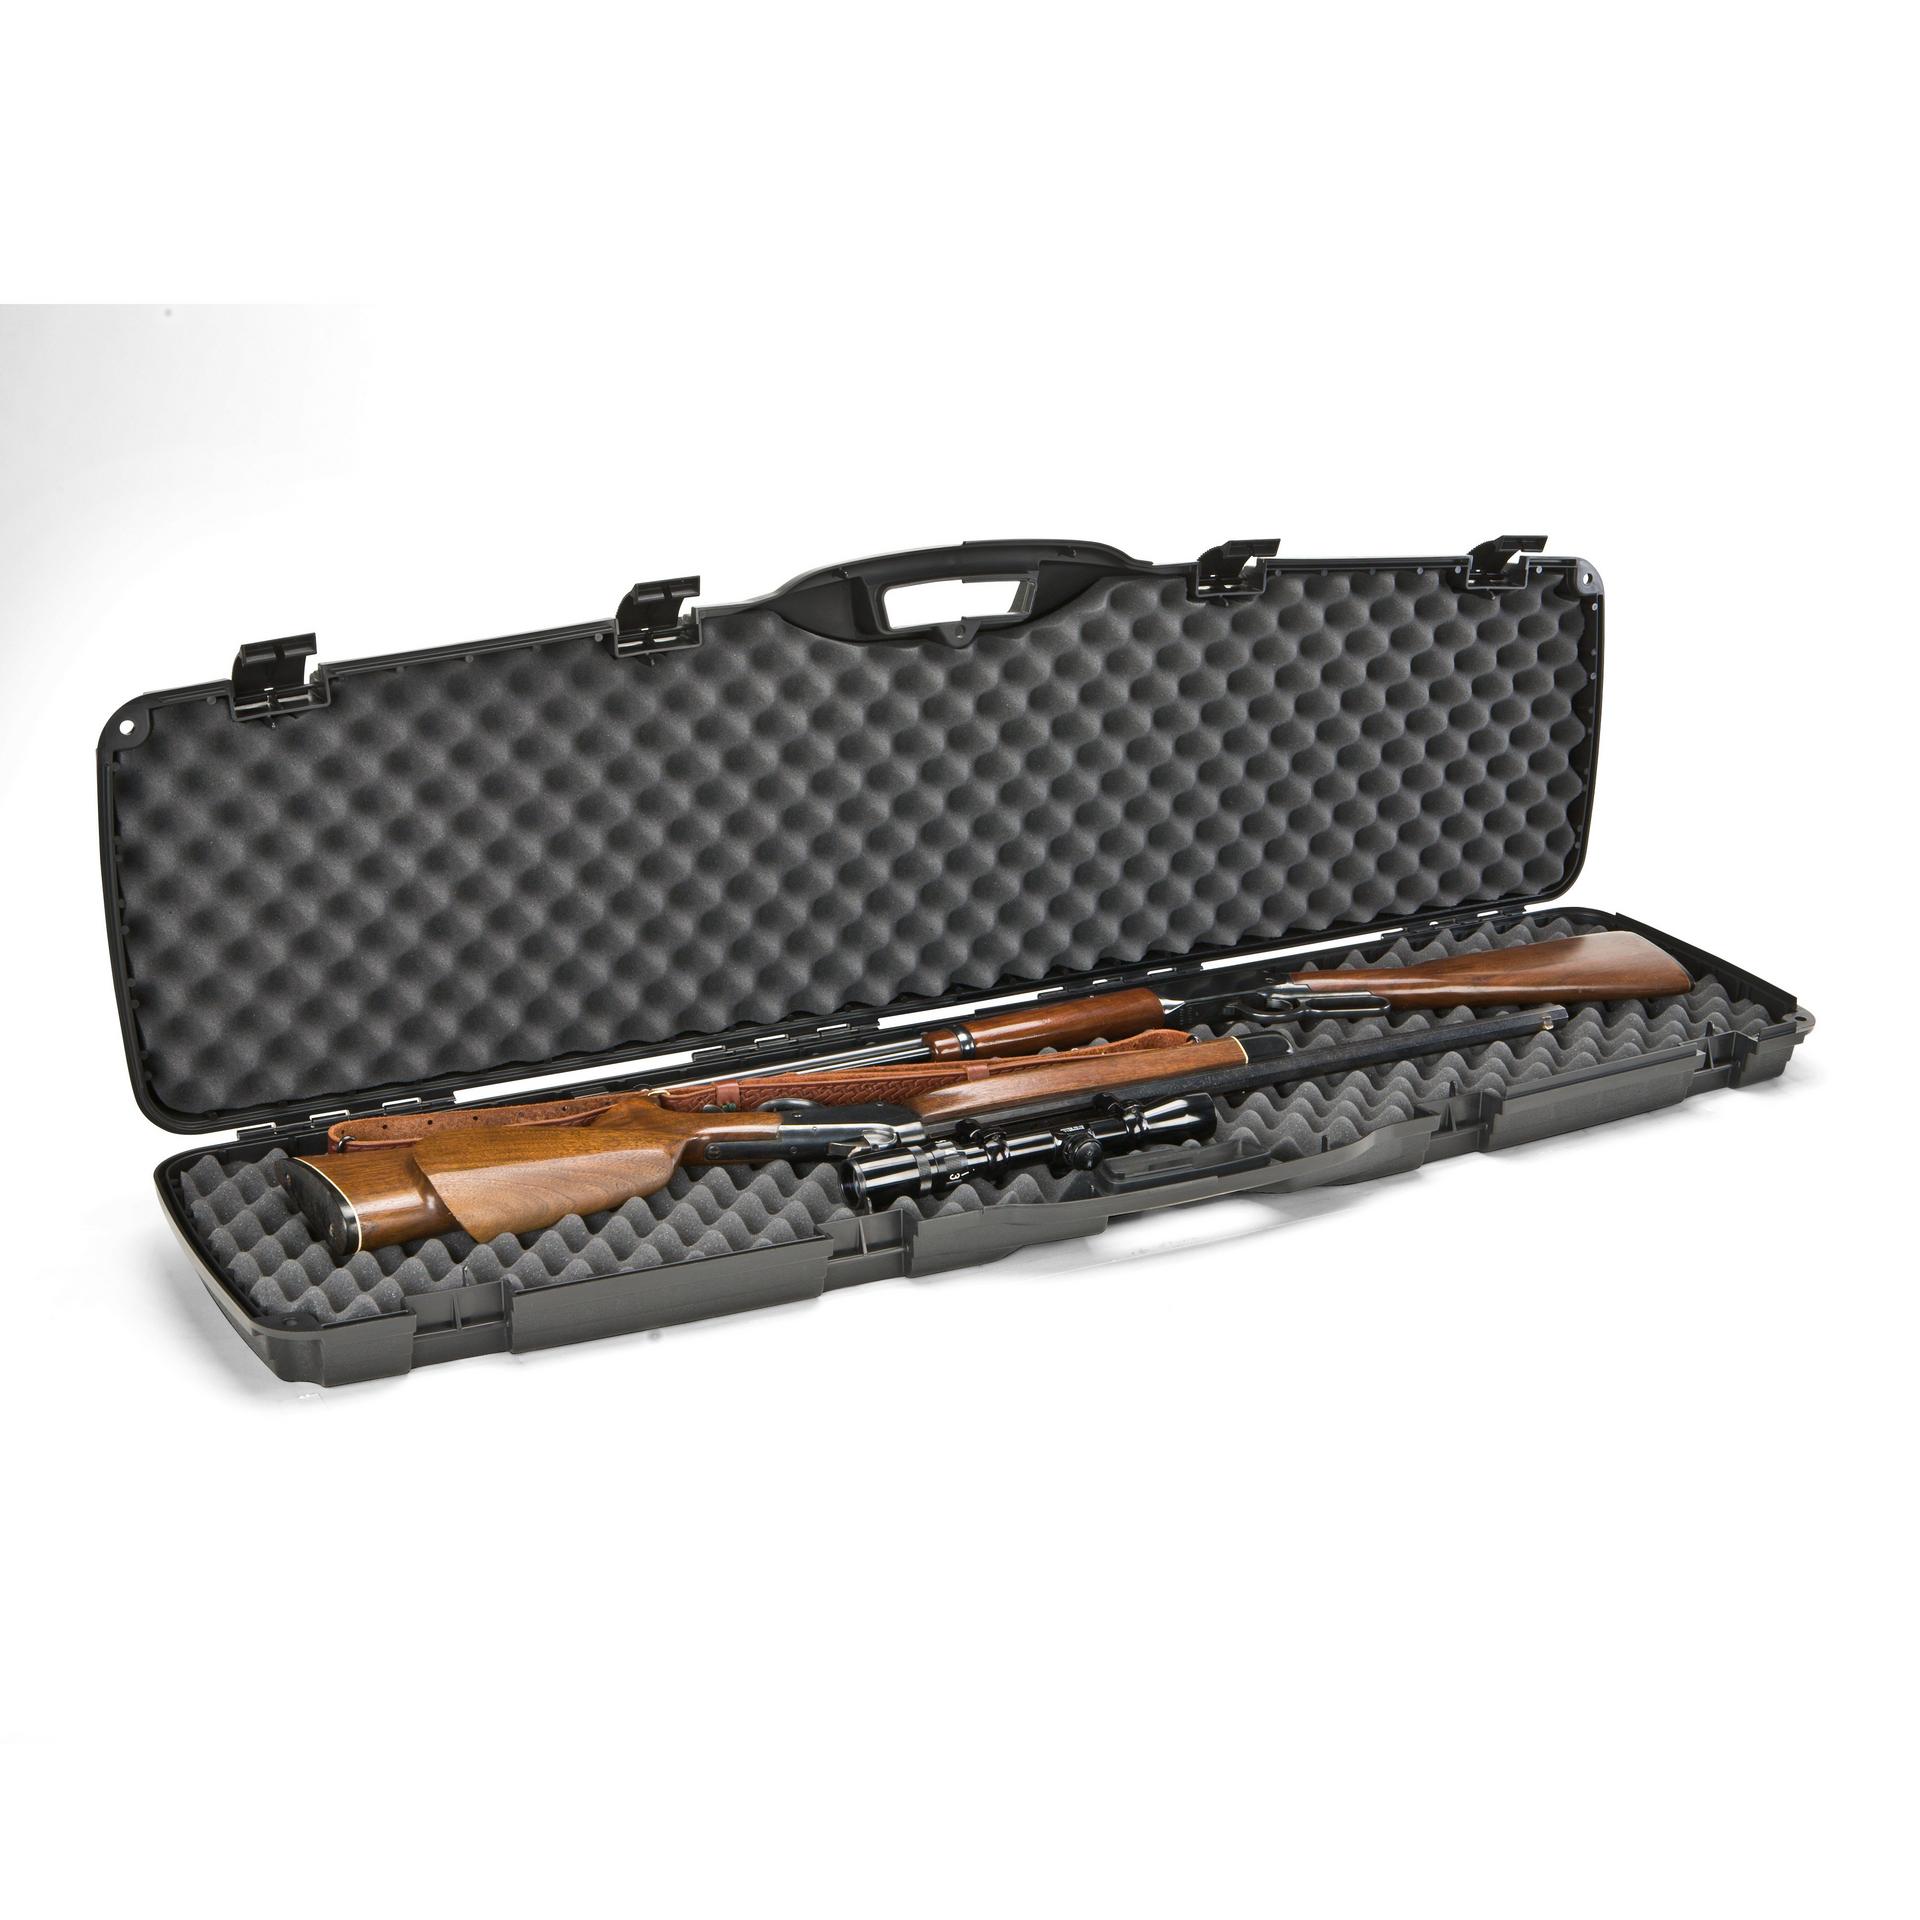 Protector Series® Double Gun Case | Plano®